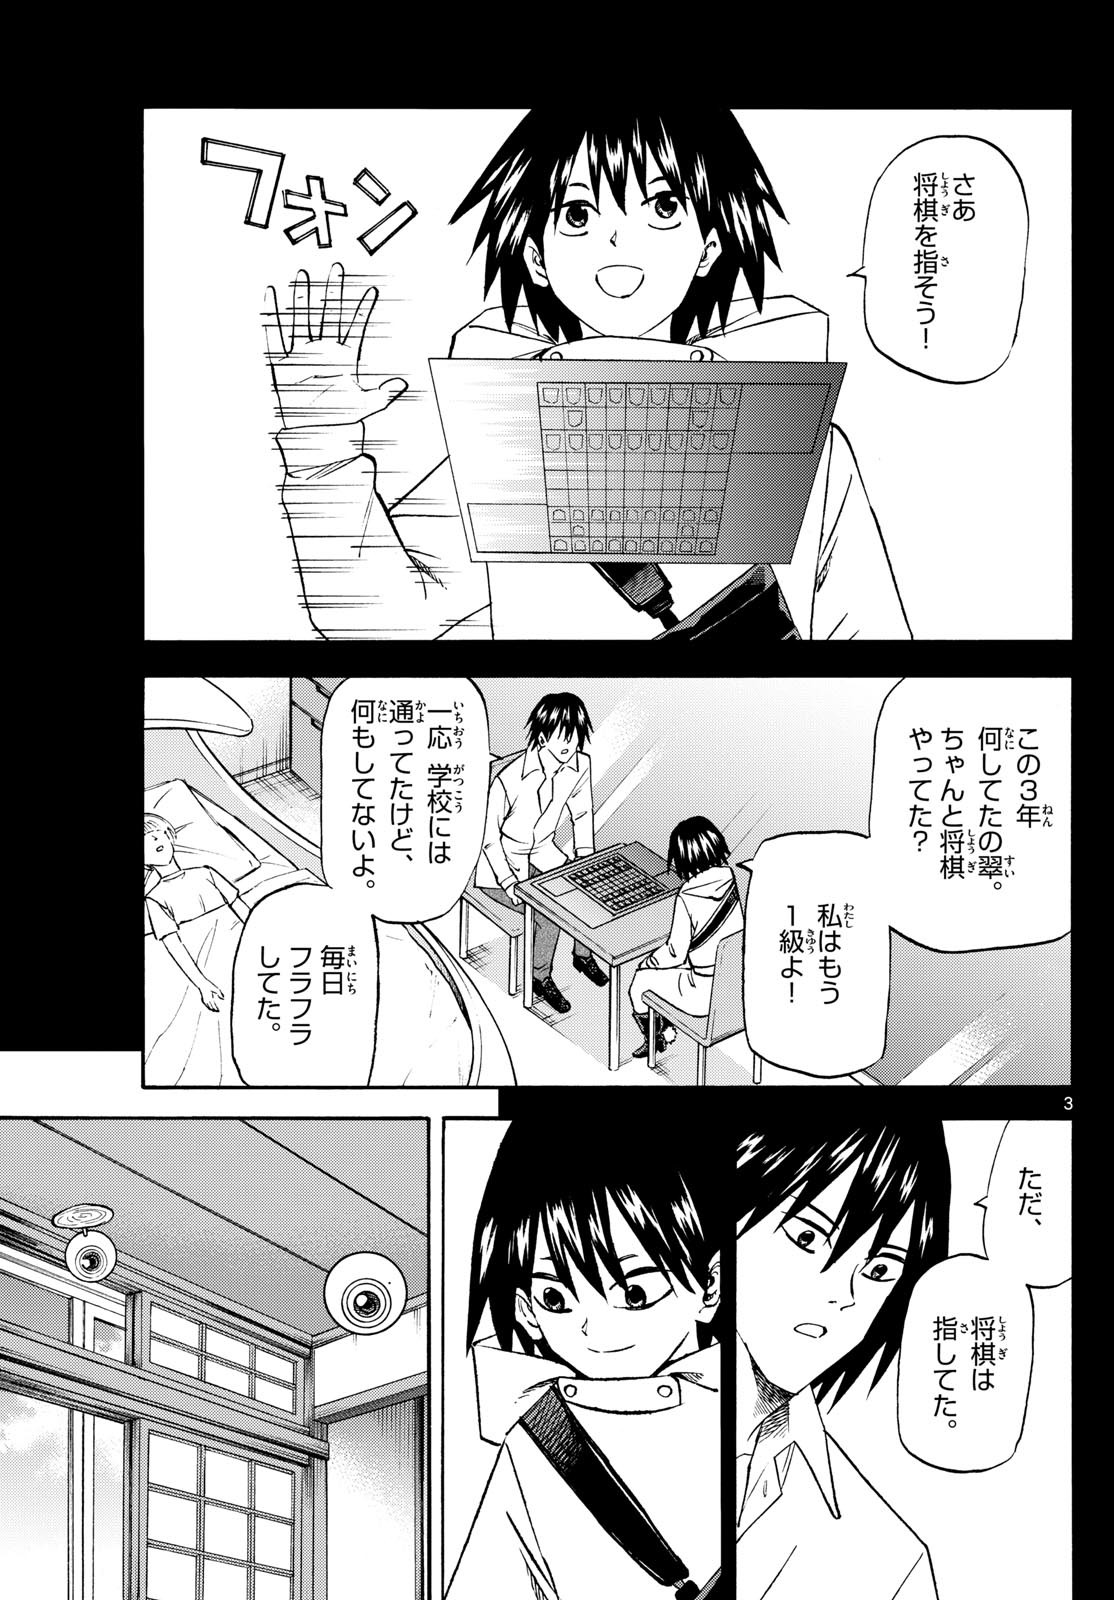 Ryu-to-Ichigo - Chapter 194 - Page 3